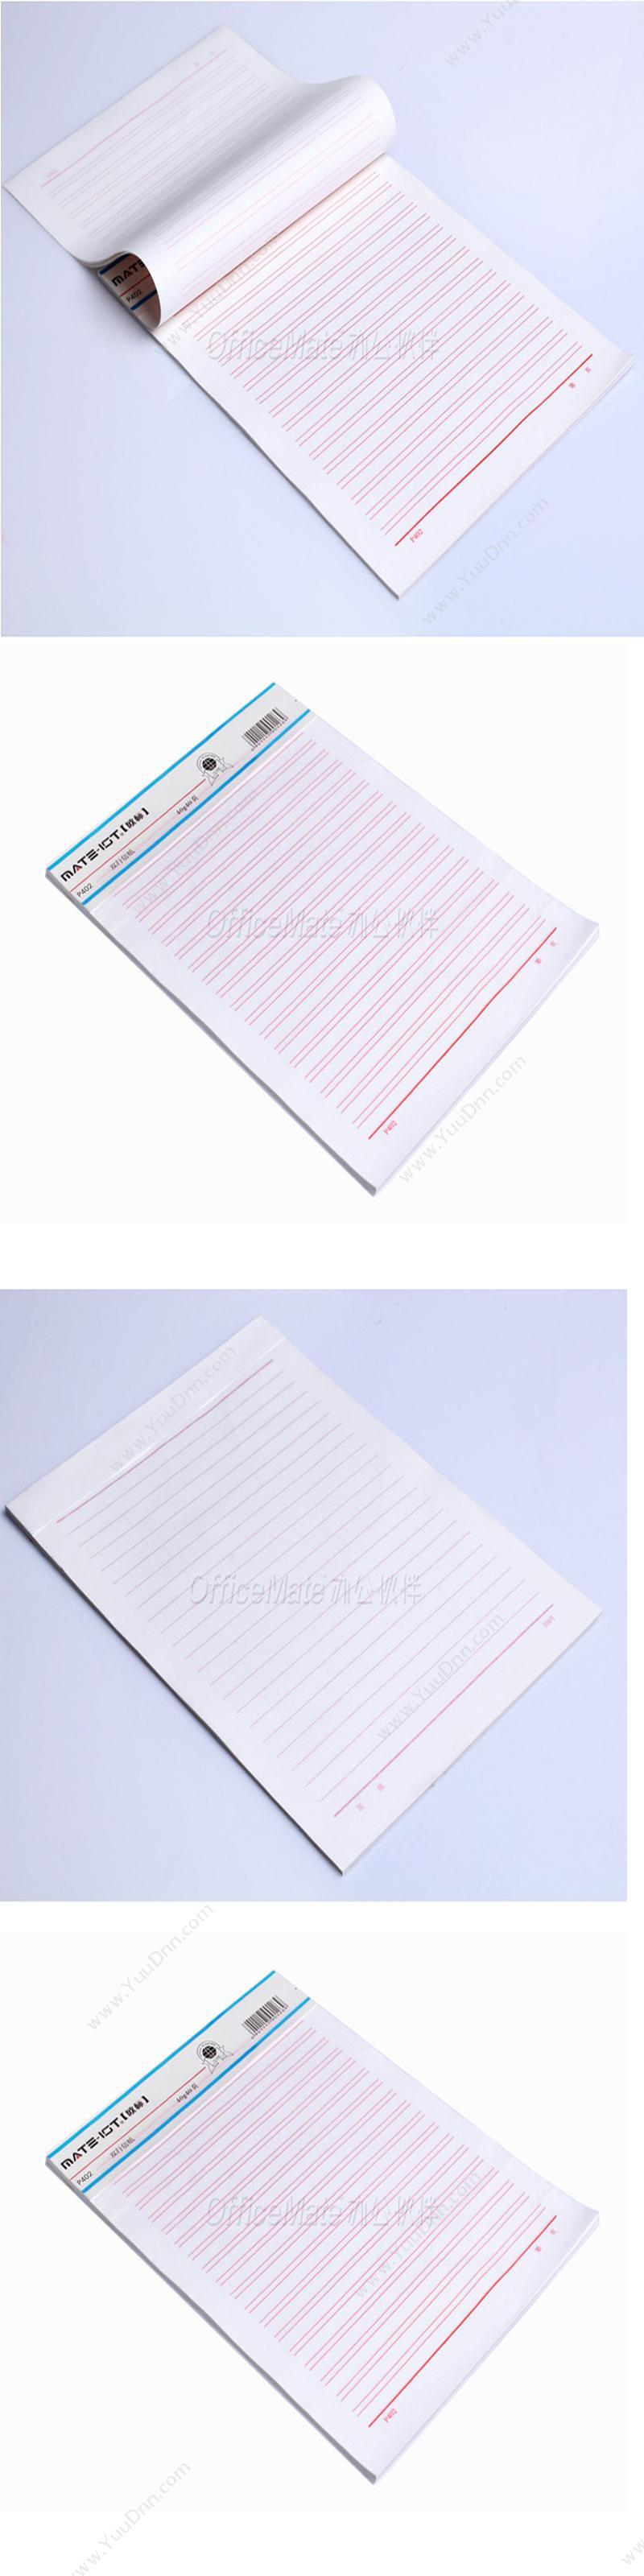 欧标 OuBiao 单行信纸 A1191 纸面笔记本 特规本